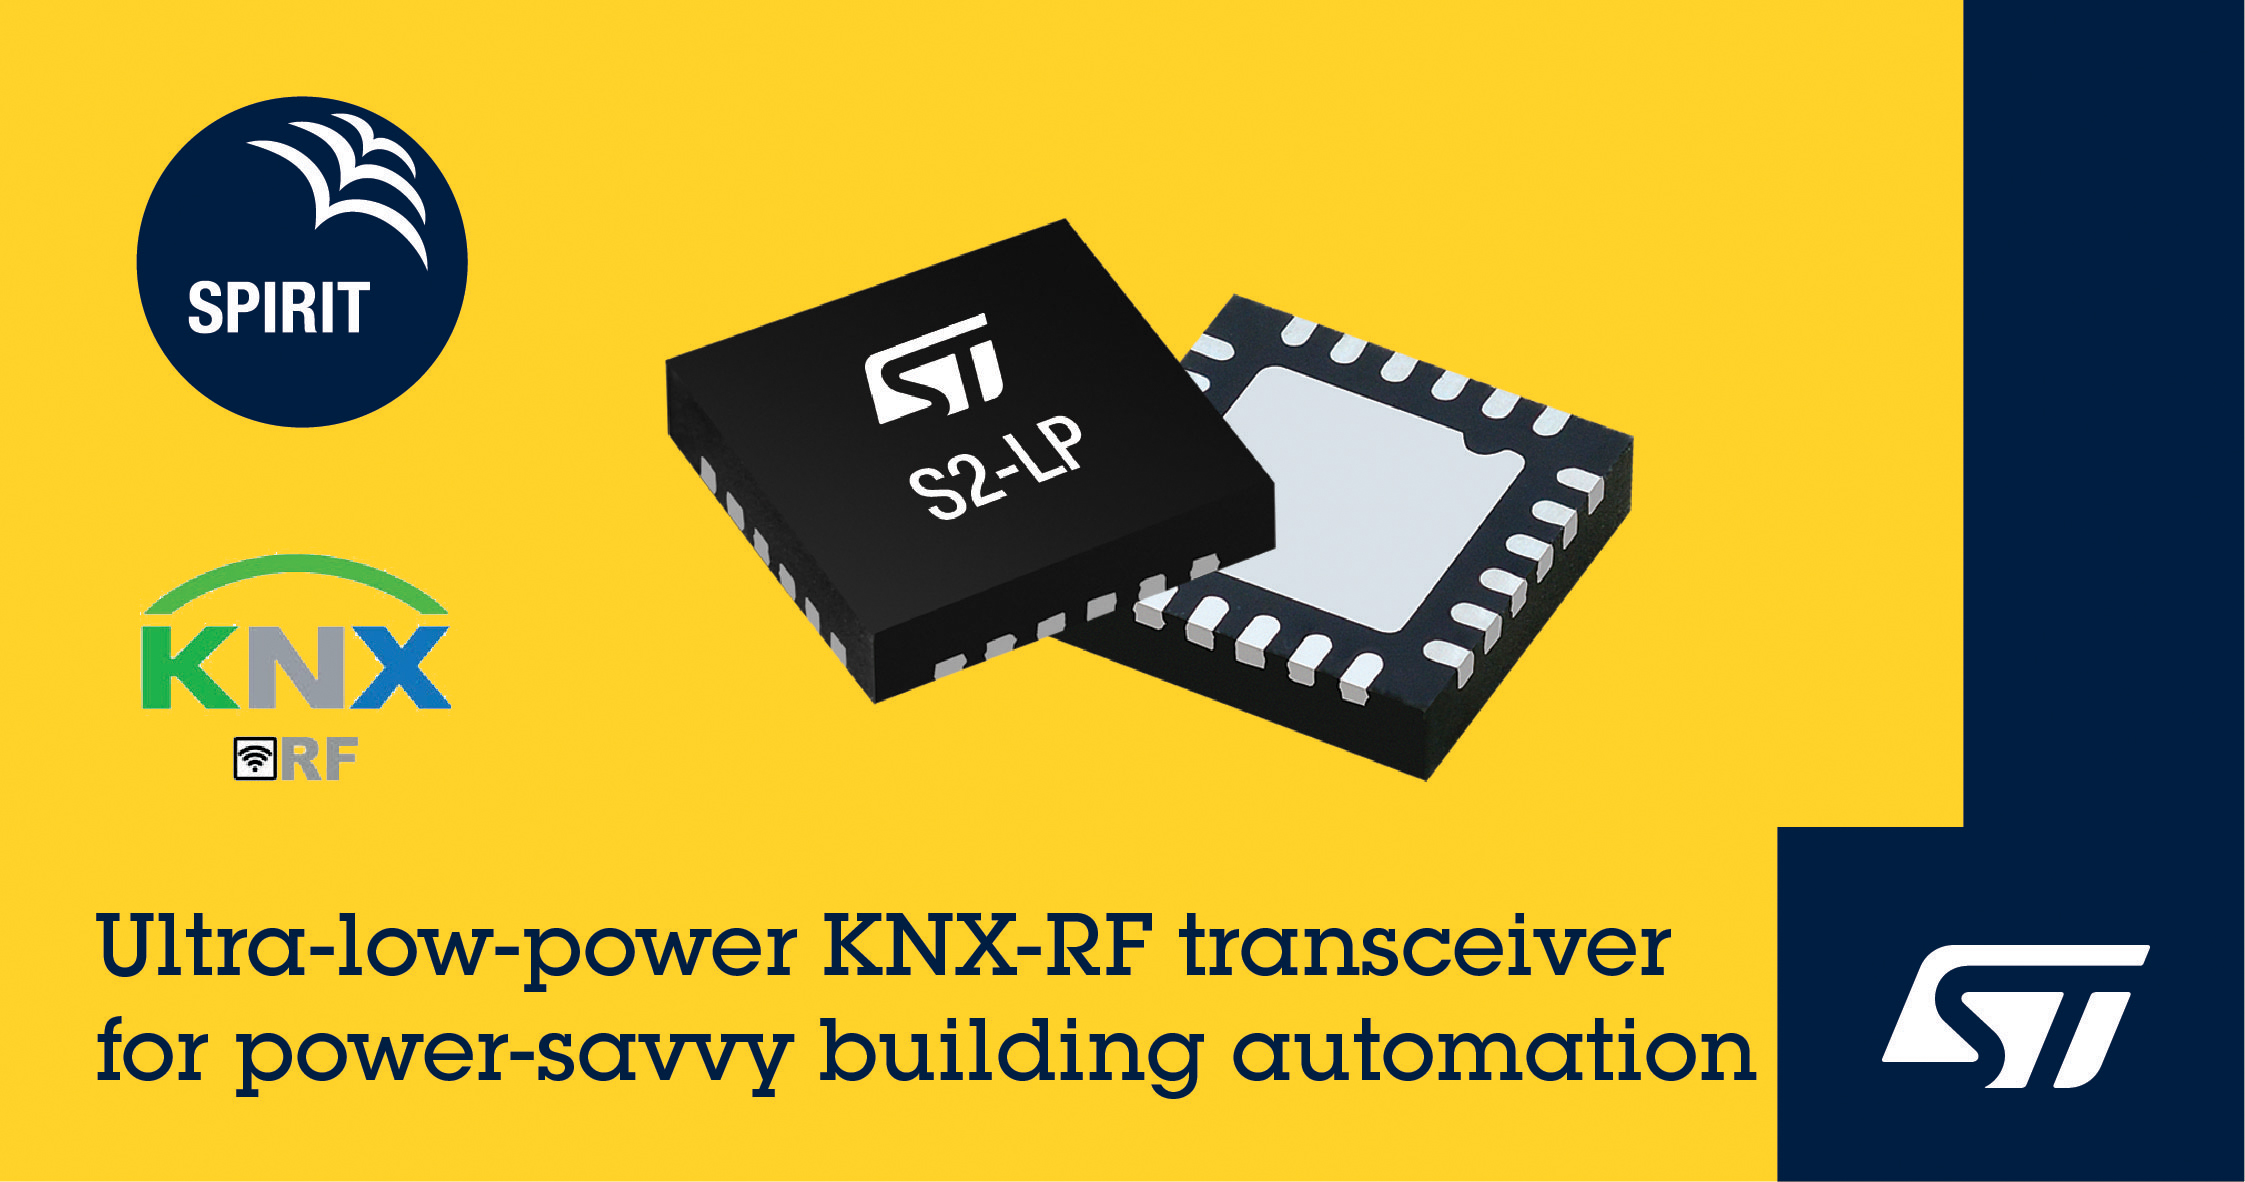 STマイクロエレクトロニクス、消費電力が重視されるビル･オートメーション向けにKNX-RFソフトウェアを発表